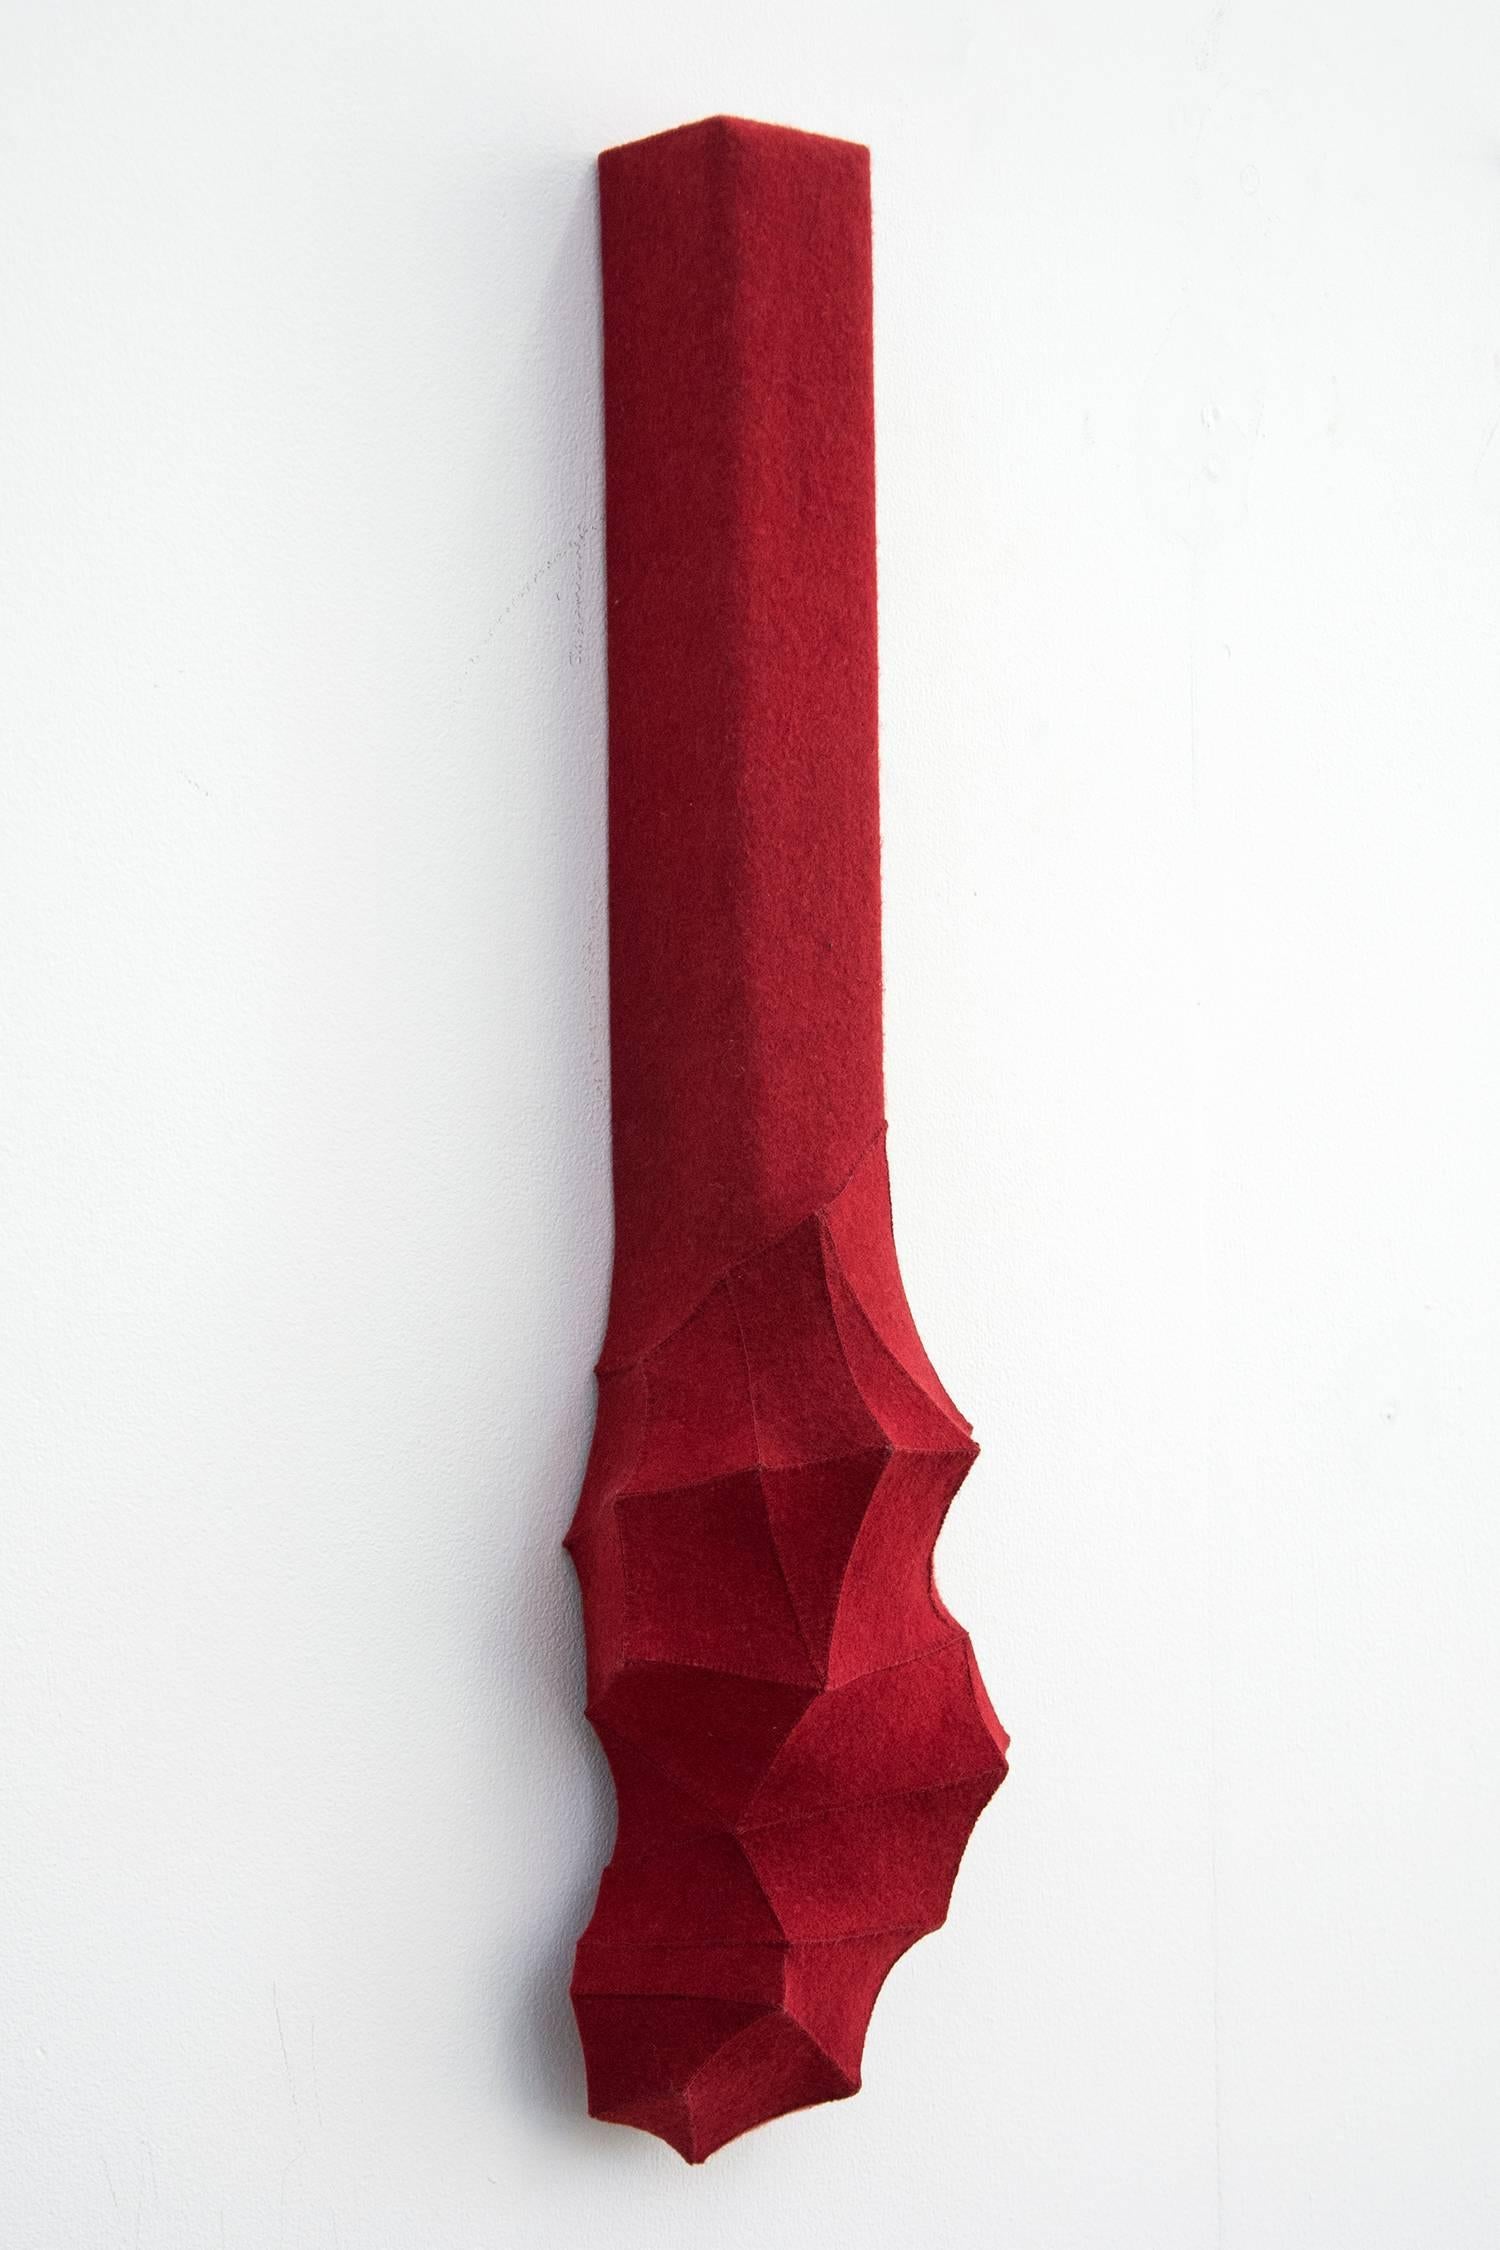 Faction - klein, rot, geometrisch, 3D, Filz, Stoff, biomorph, Wandkunst (Abstrakt), Sculpture, von Chung-Im Kim